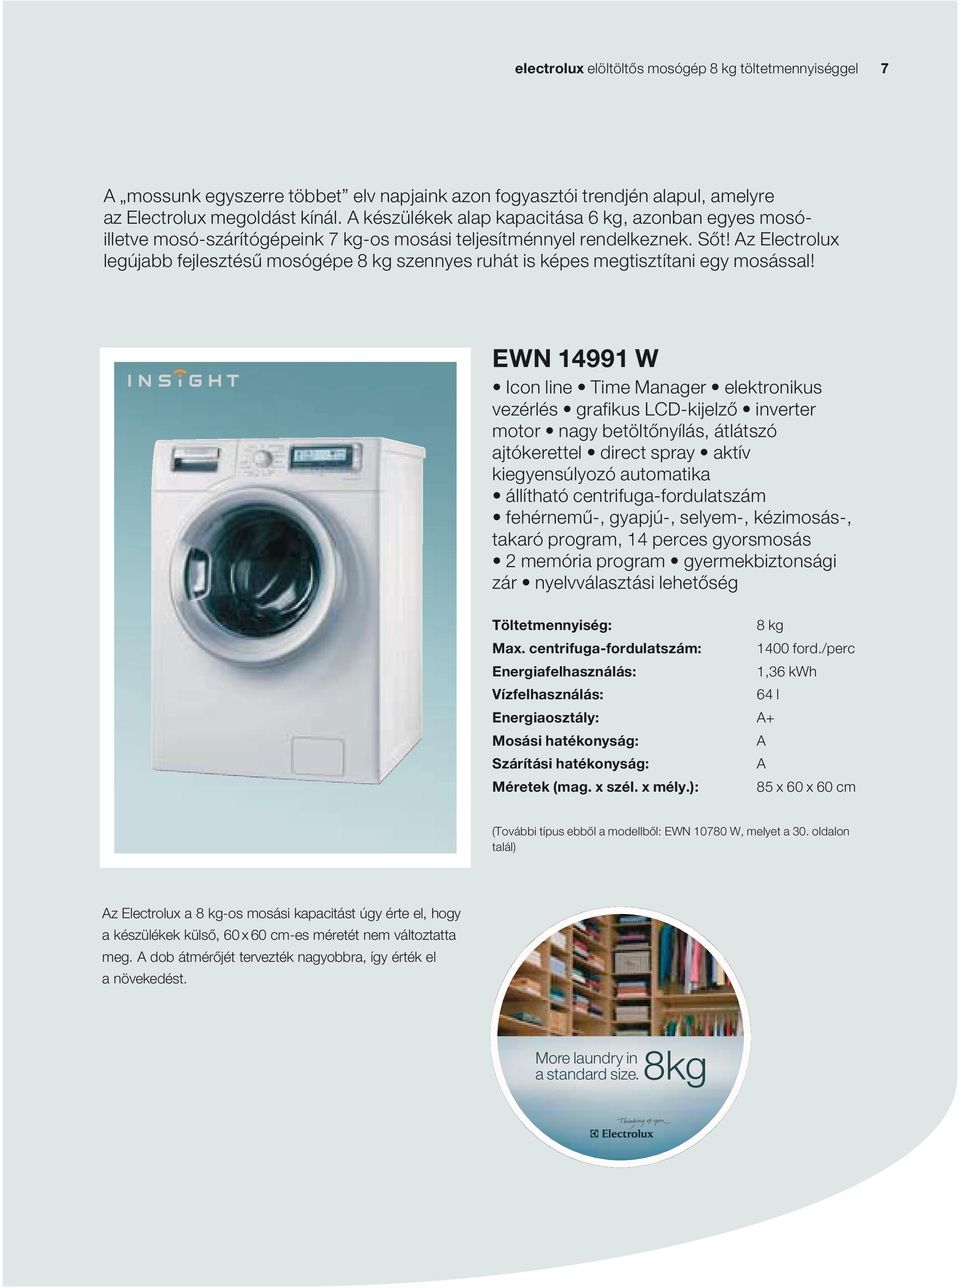 z Electrolux legújabb fejlesztésű mosógépe 8 kg szennyes ruhát is képes megtisztítani egy mosással!